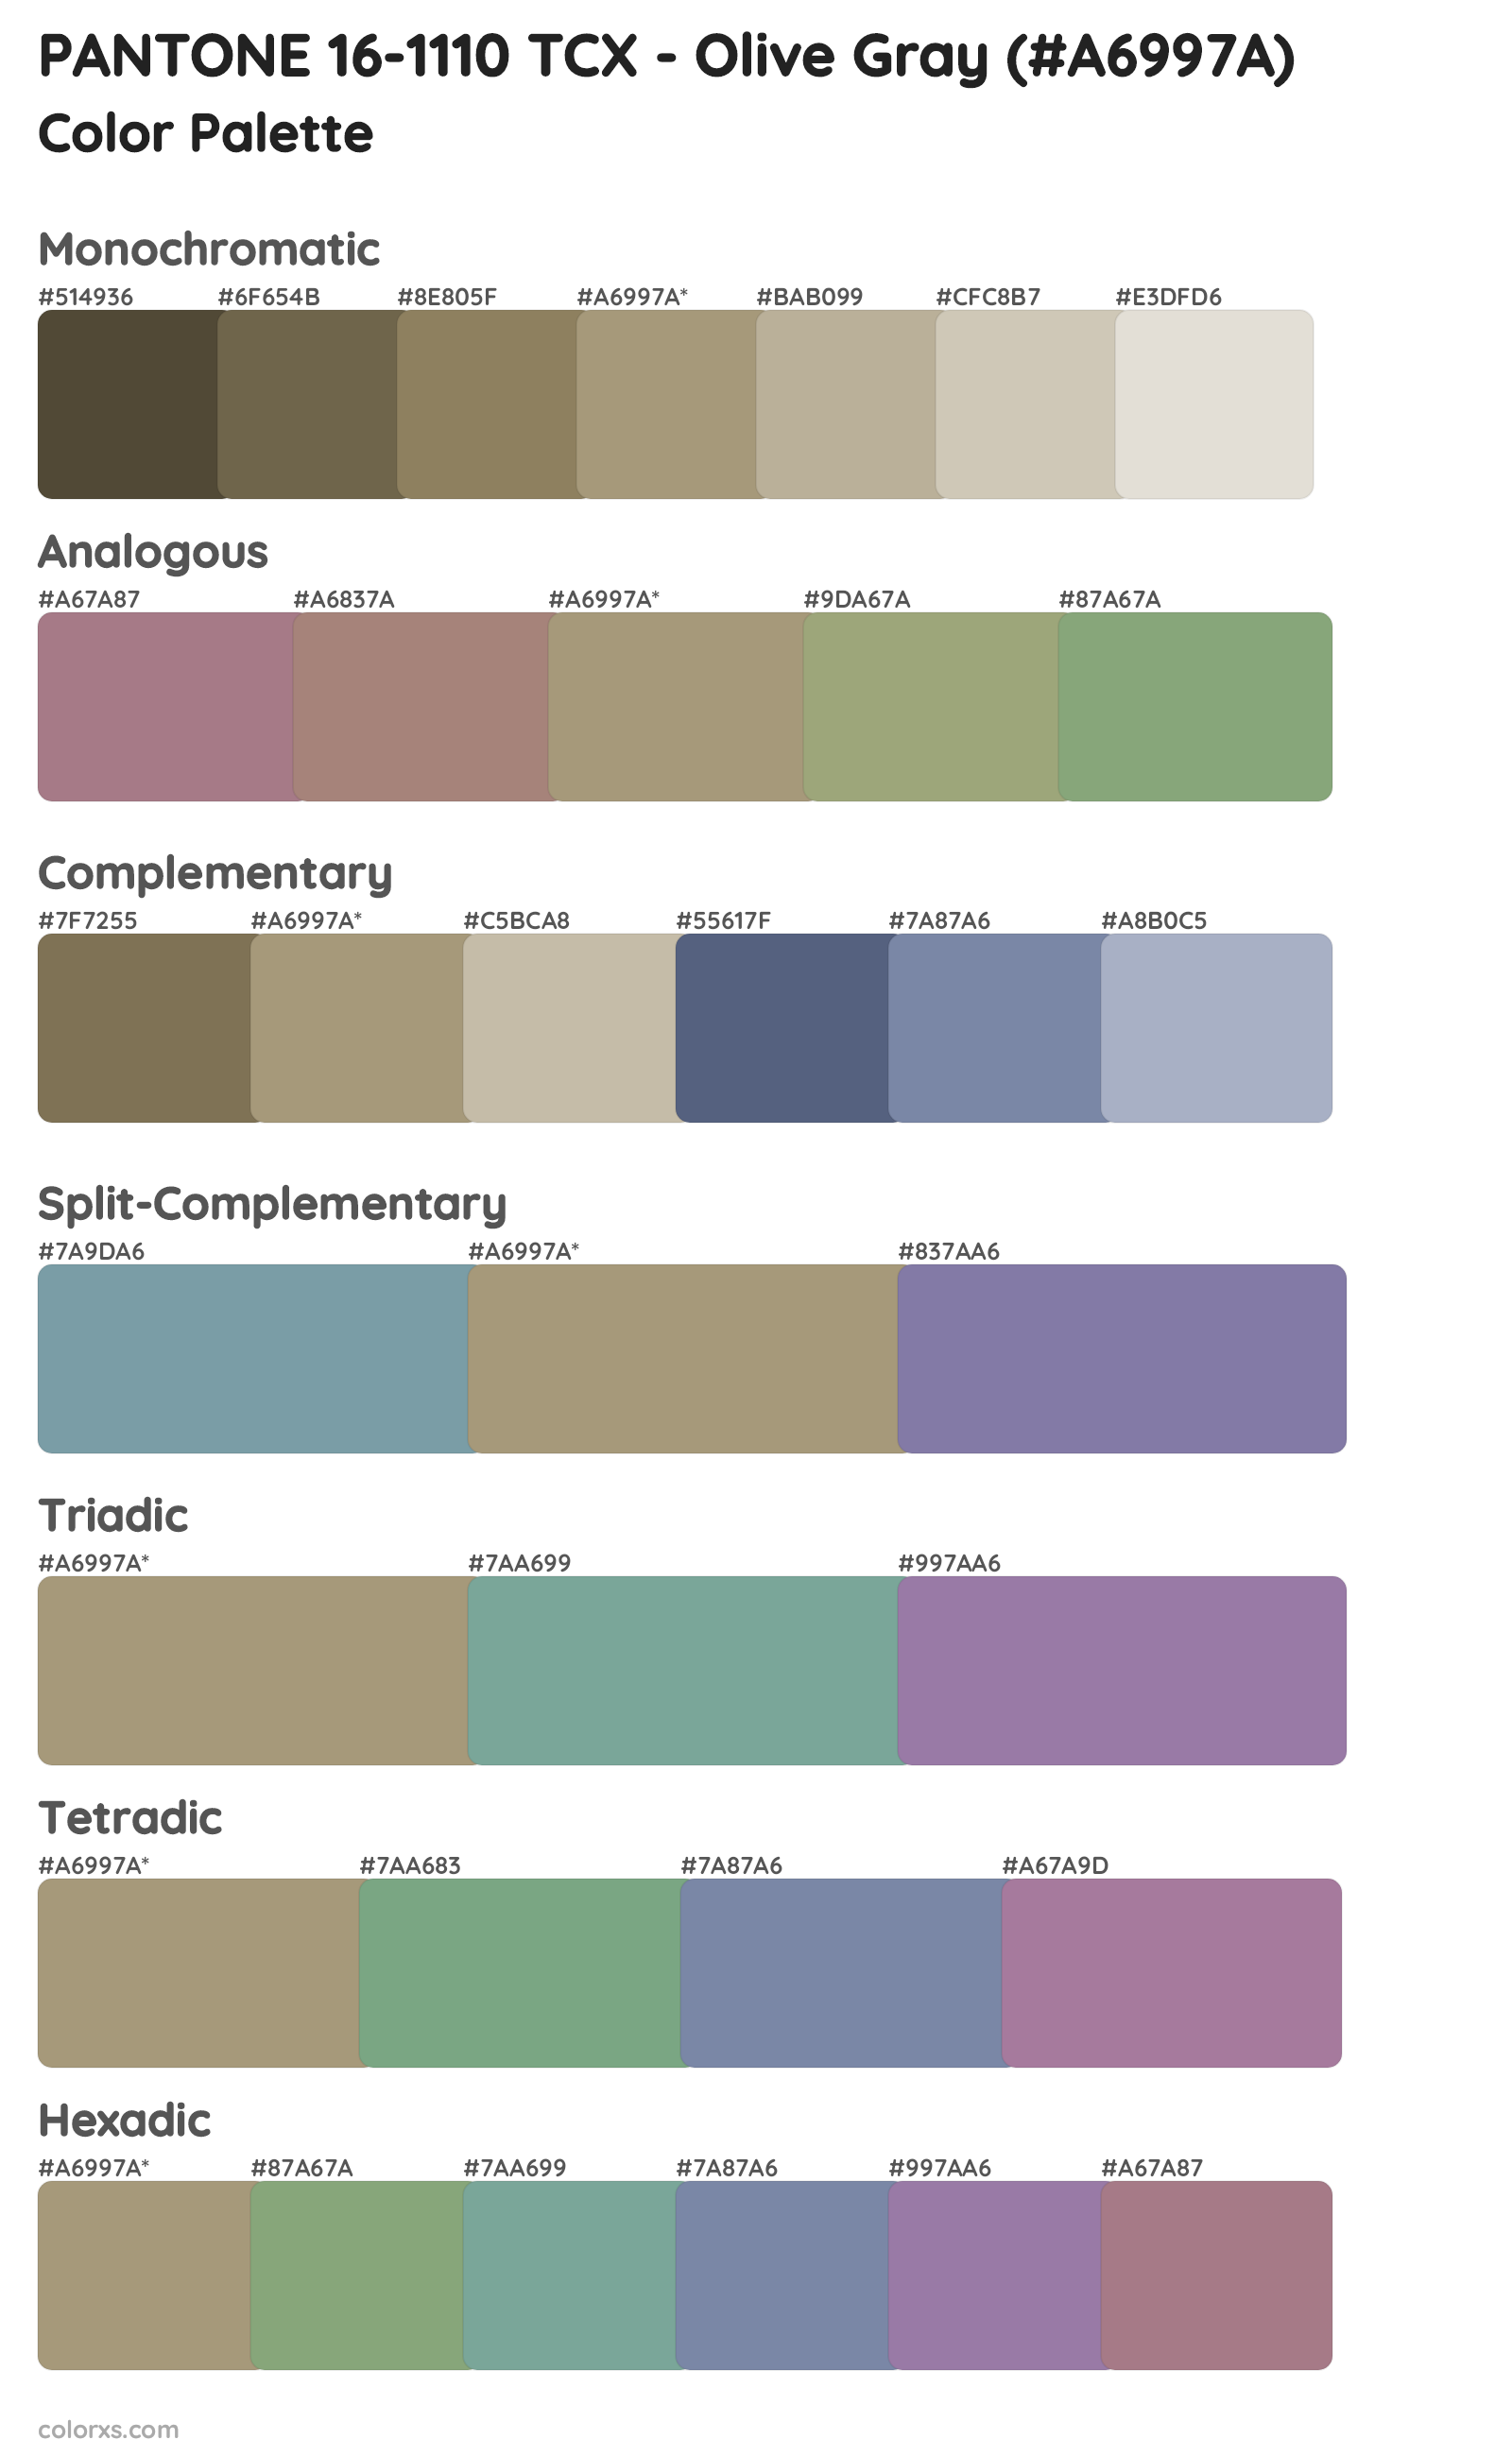 PANTONE 16-1110 TCX - Olive Gray Color Scheme Palettes